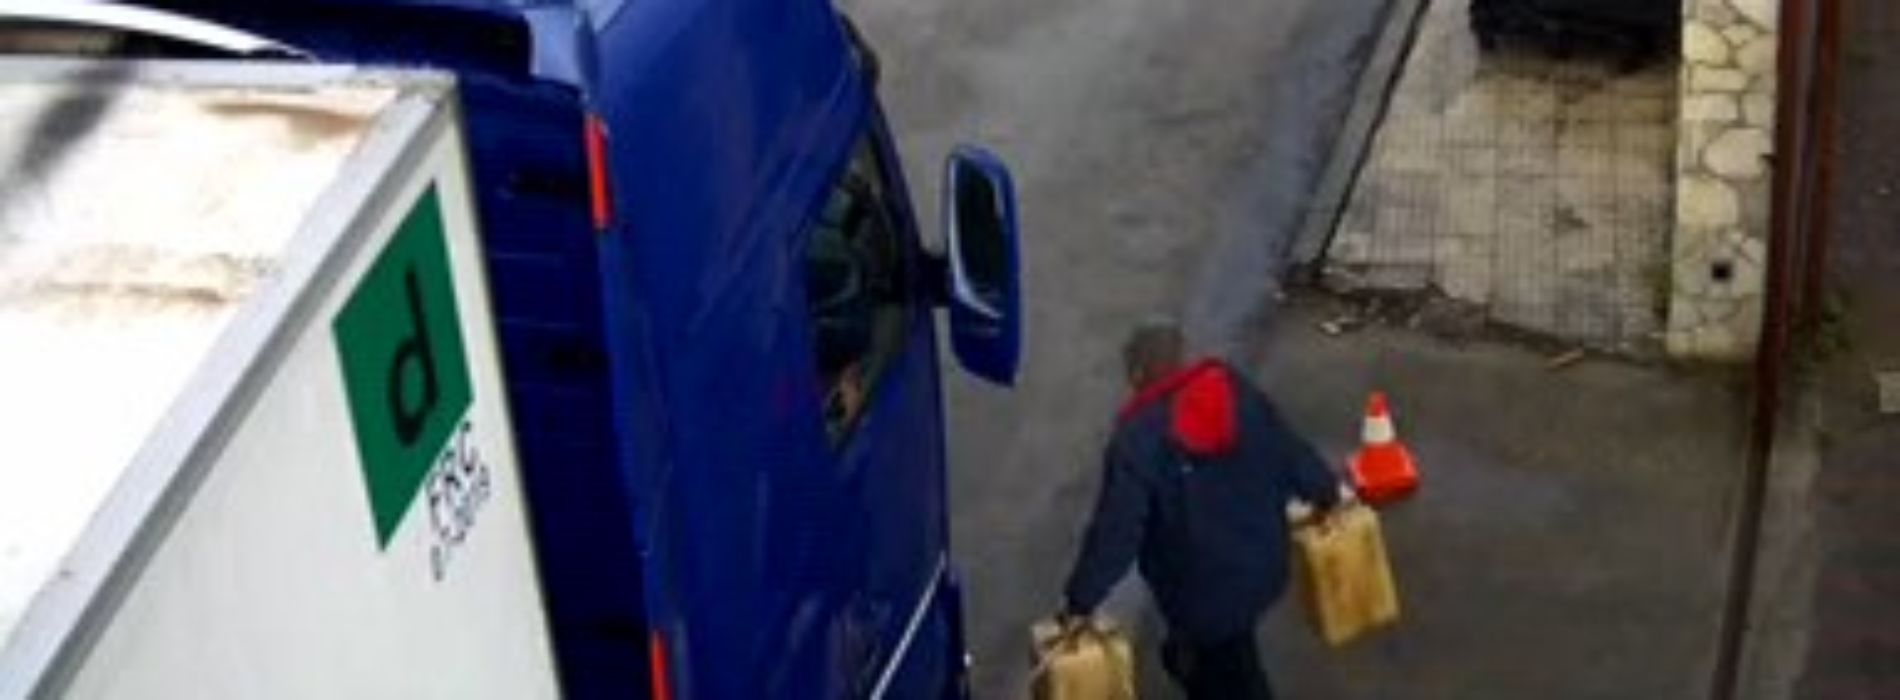 ENNA. Misura cautelare dei Carabinieri per furto, auto riciclaggio e ricettazione